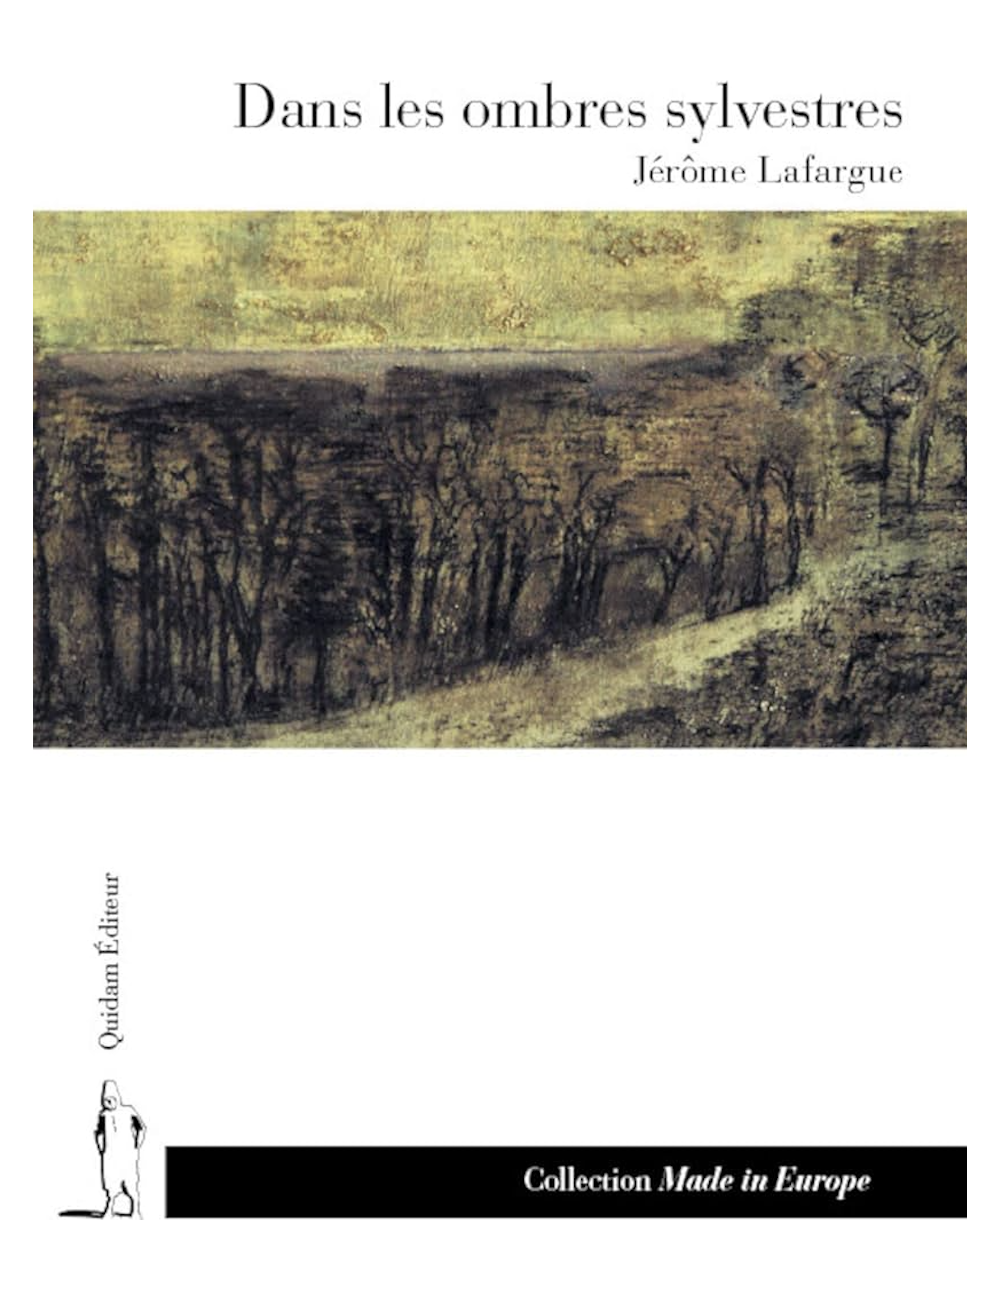 Le livre Dans les ombres sylvestres Quidam Jérôme Lafargue